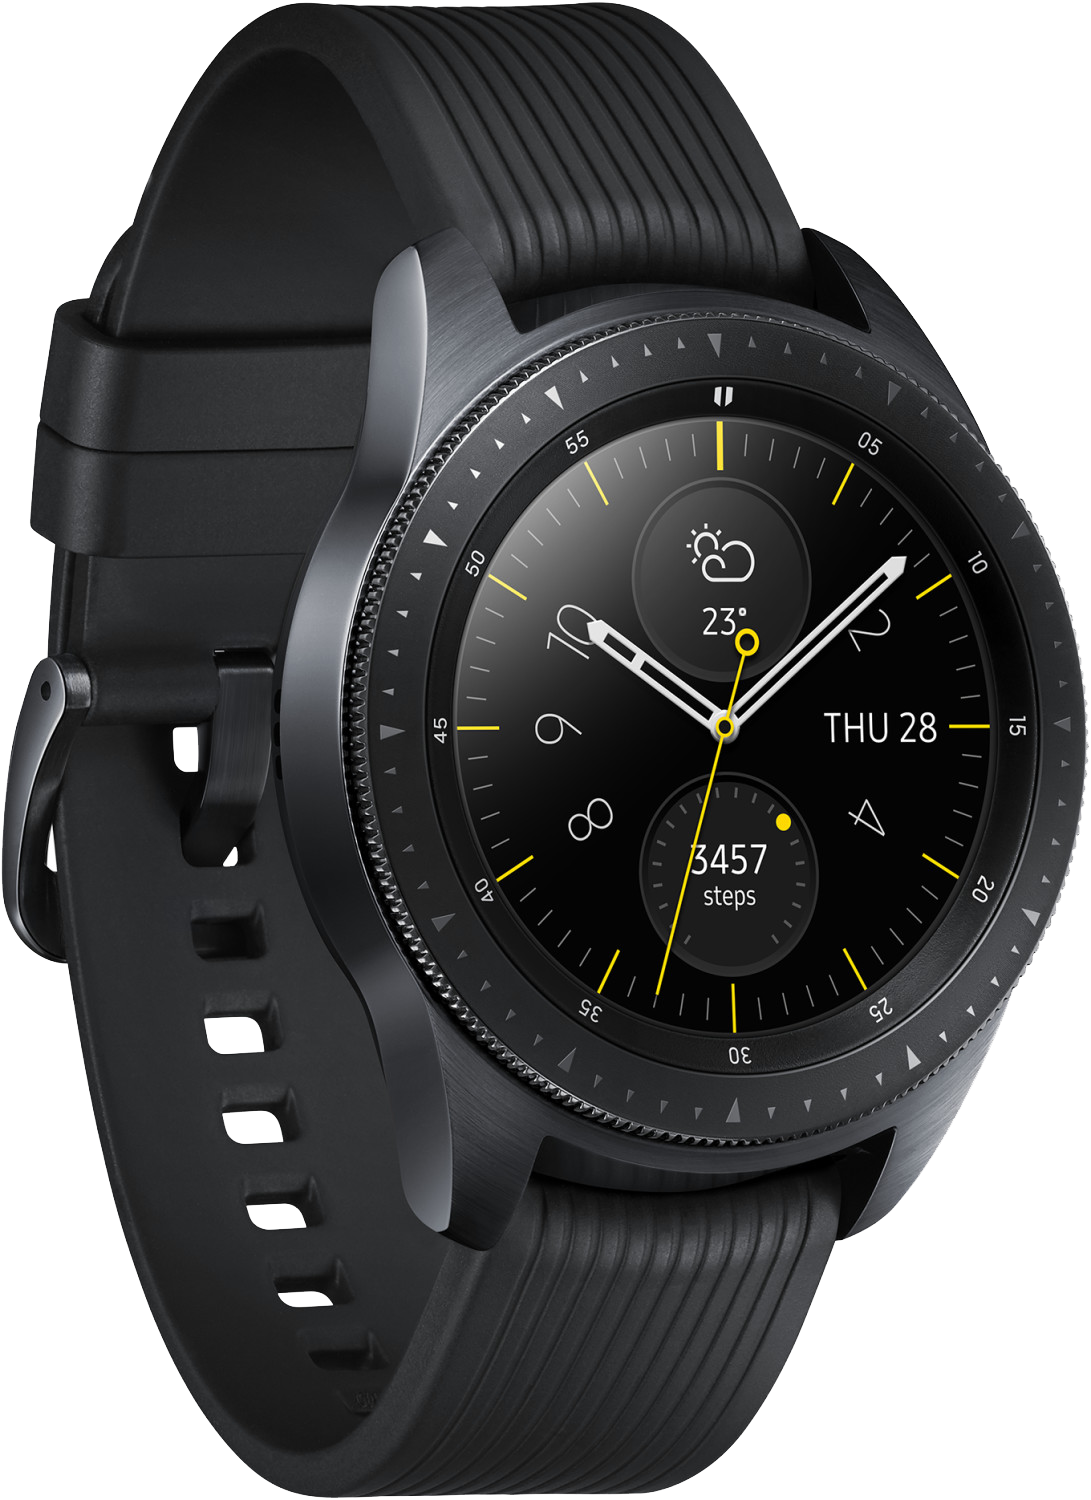 Galaxy Watch 46mm SM-R800